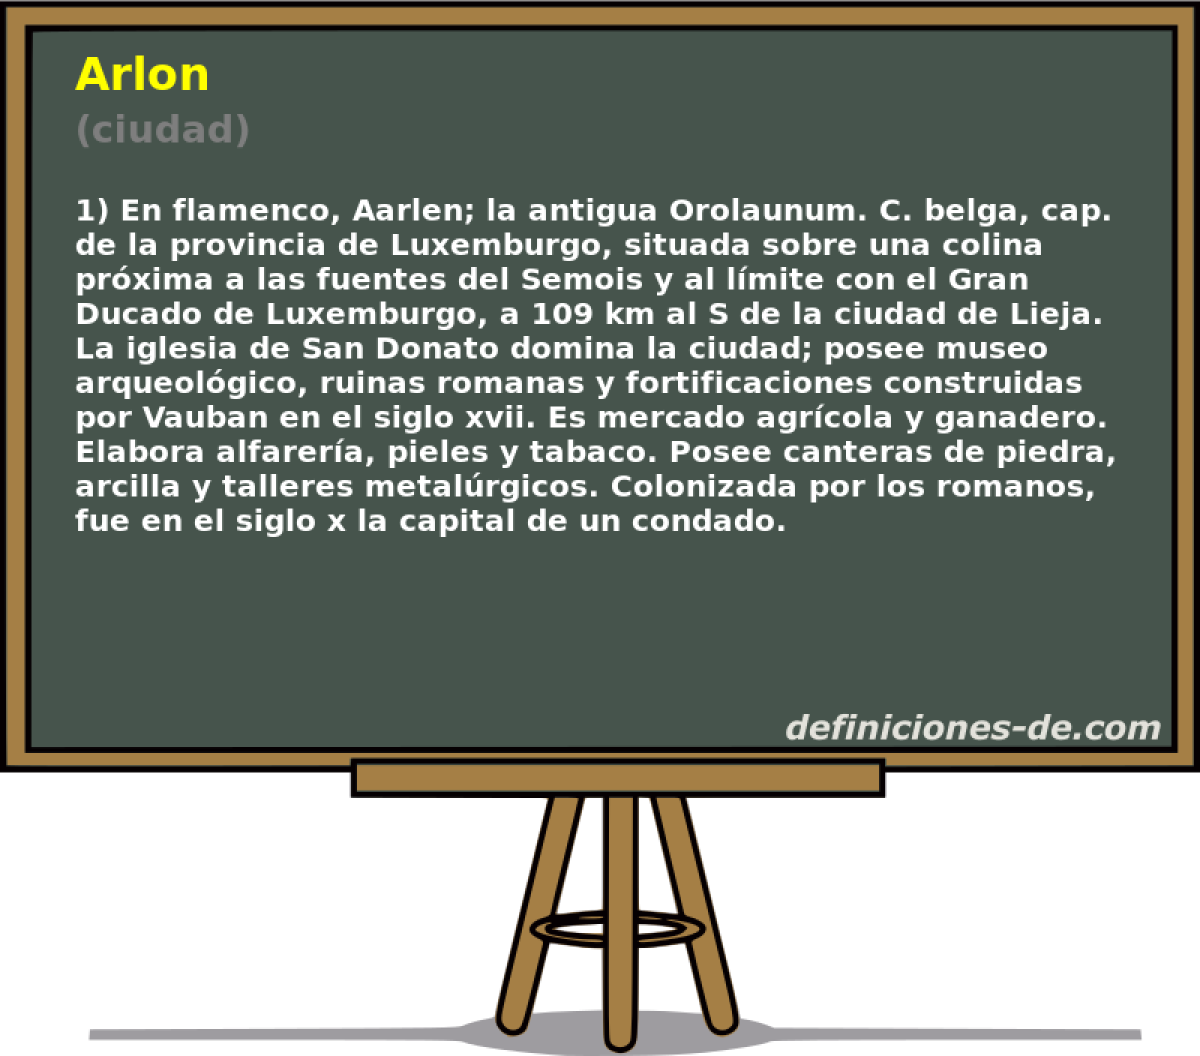 Arlon (ciudad)